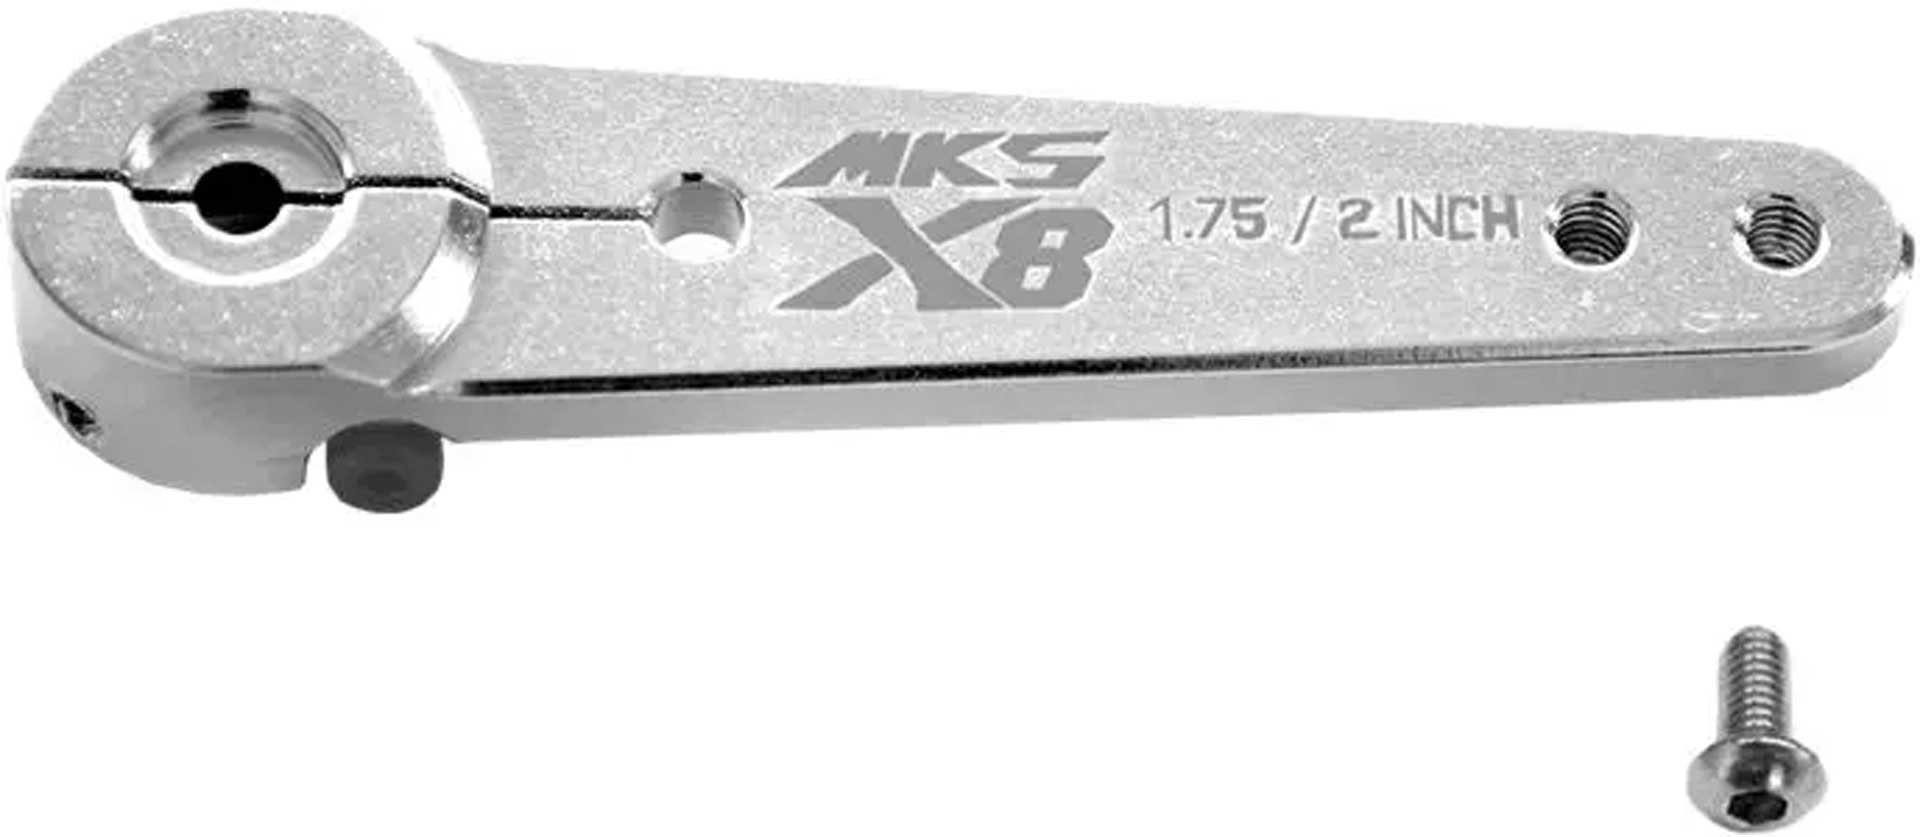 MKS Servohorn einseitig Metall M3 - L 1.75/2 in - HBL8X0, HBL380